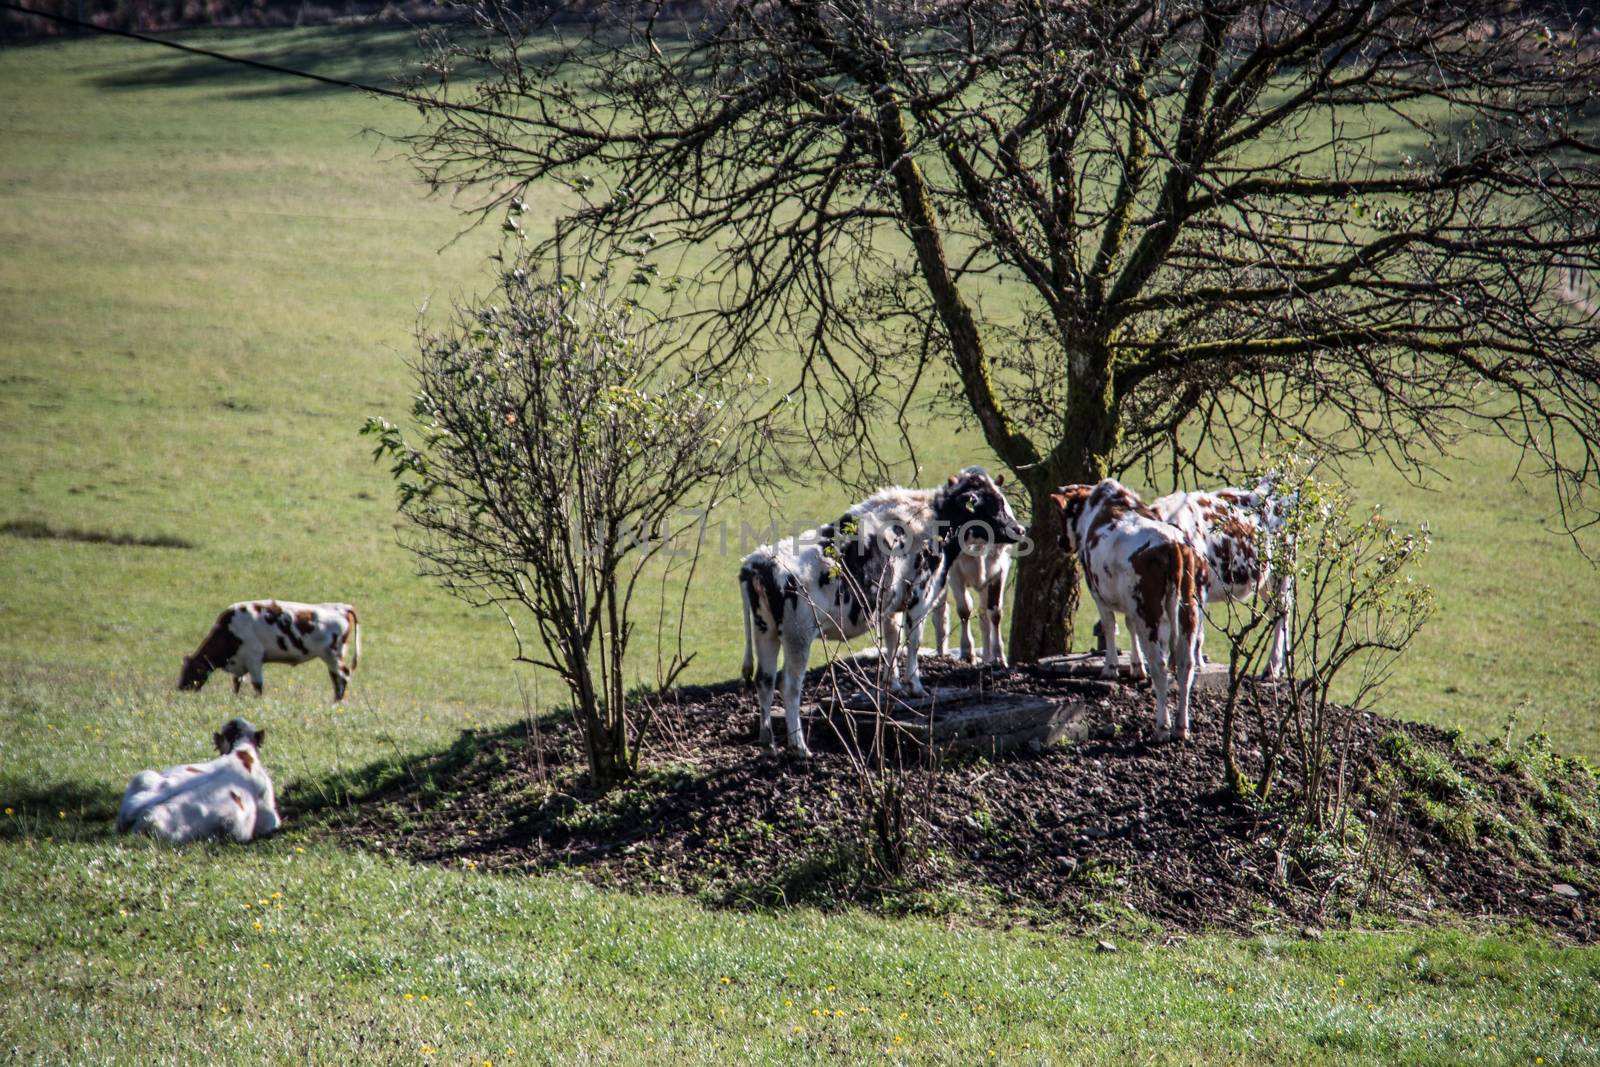 Cows seek shade under tree